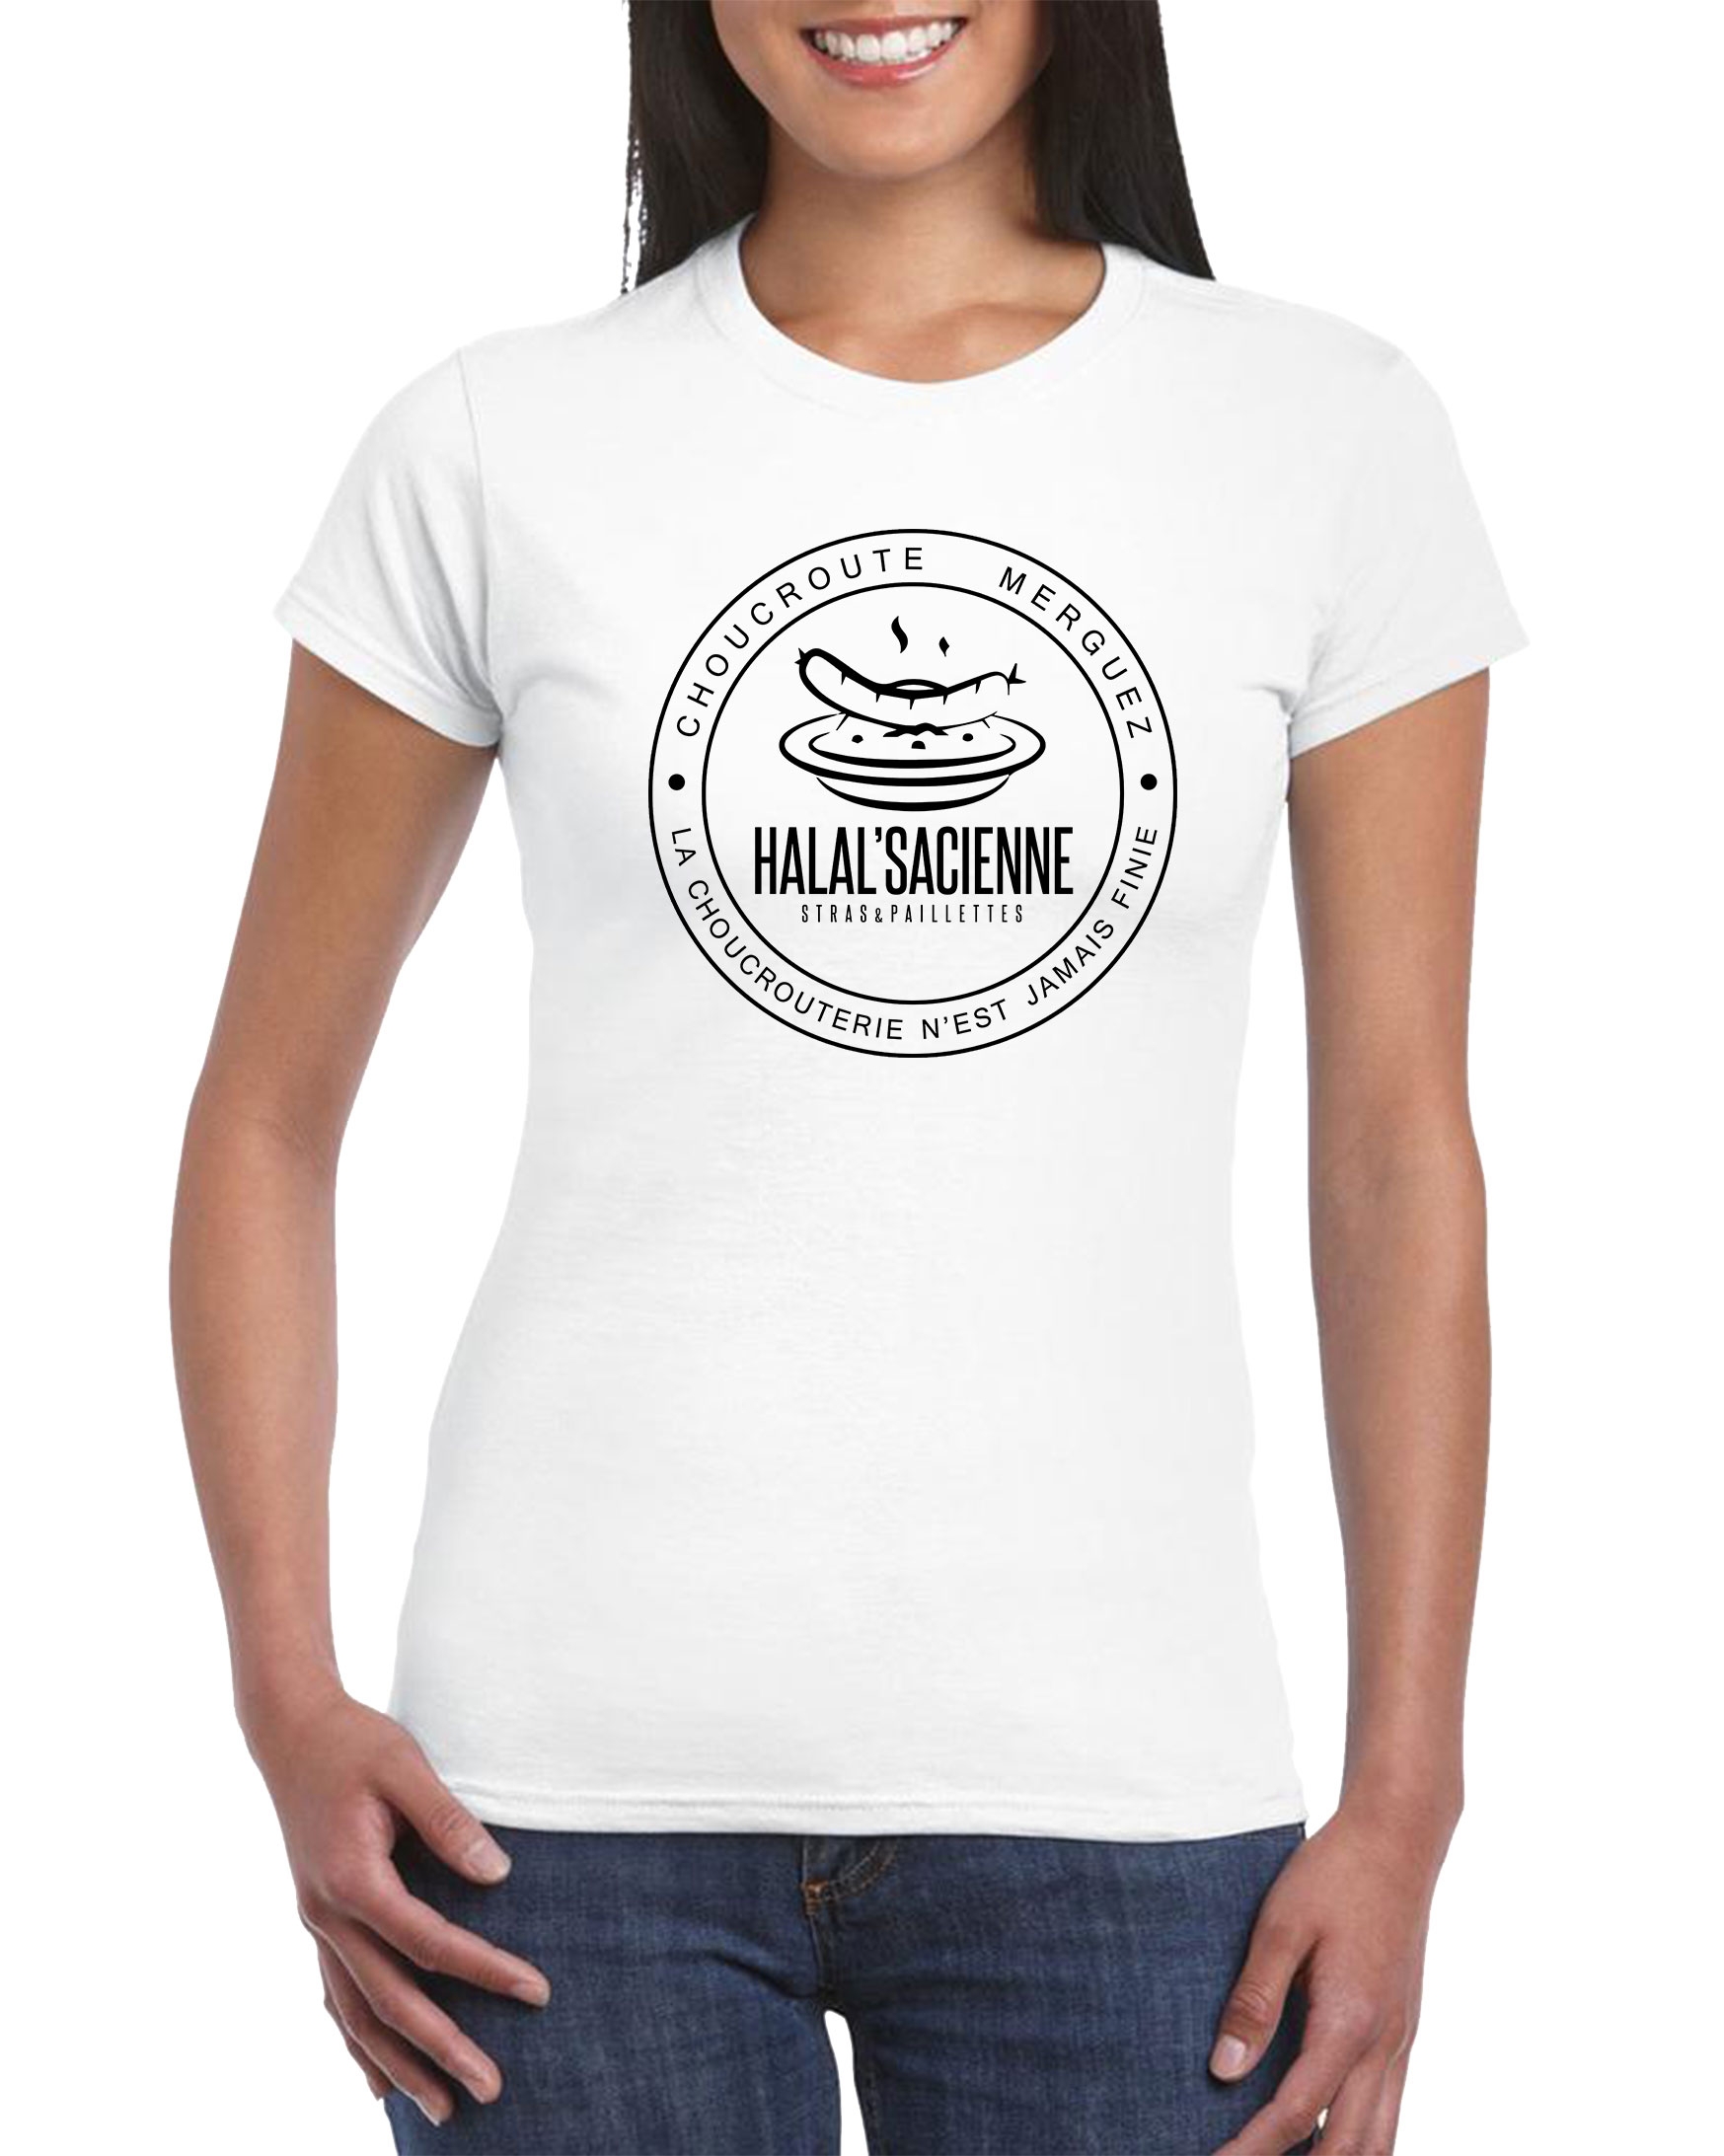 Tshirt Femme Stras & Paillettes modèle 4 Halalsacienne de stras & paillettes sur Scredboutique.com